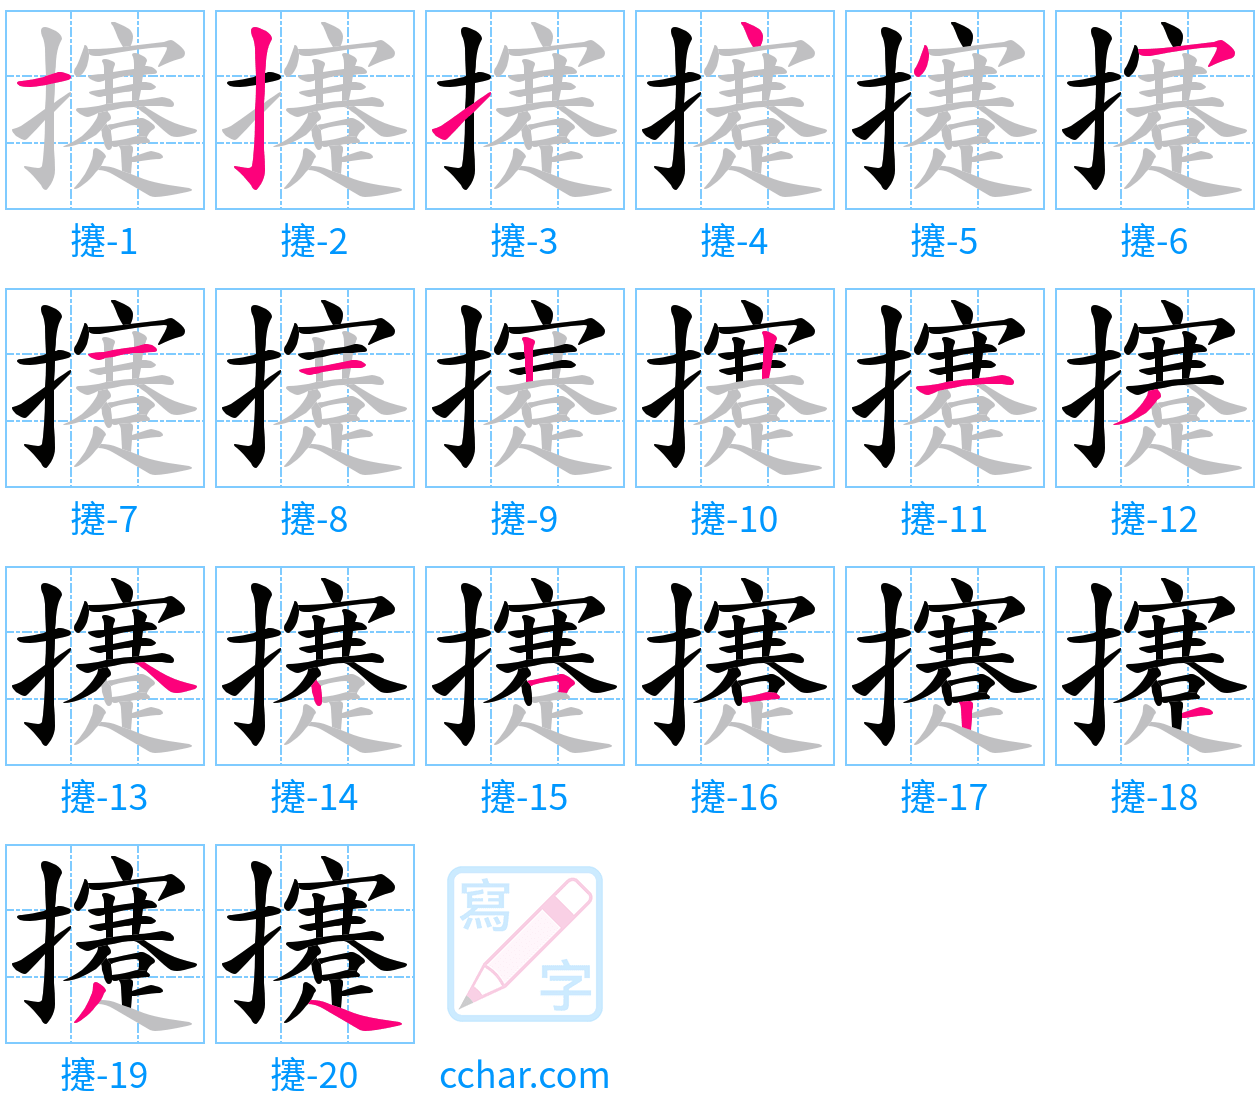 攓 stroke order step-by-step diagram